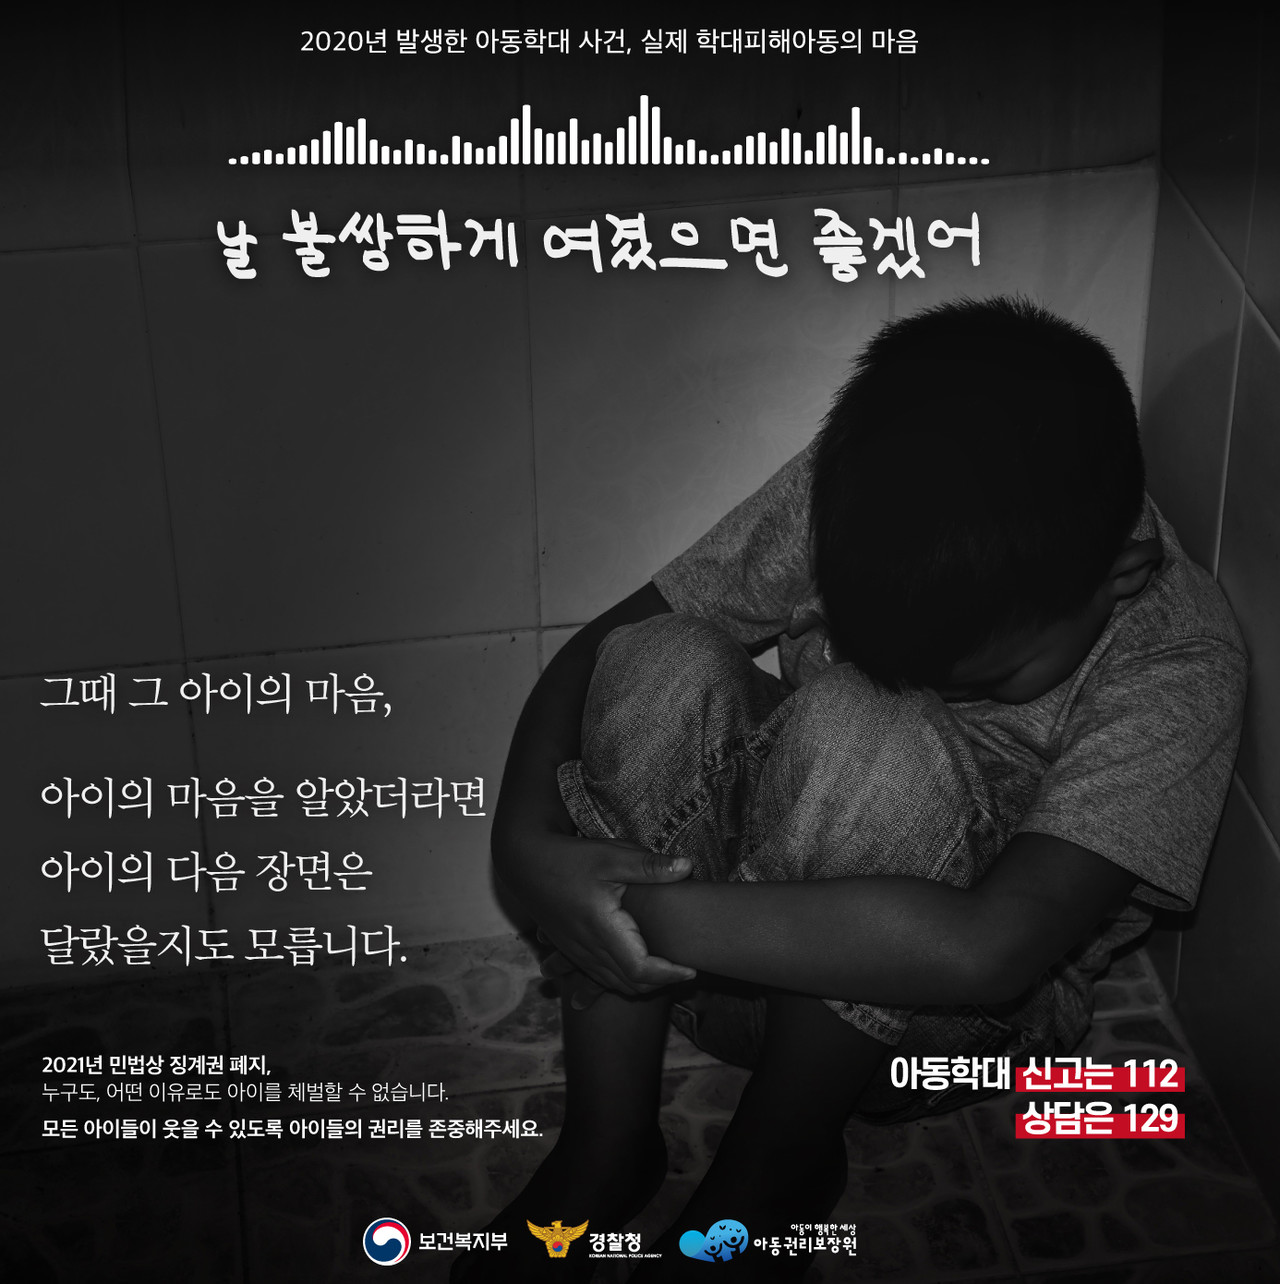 ▲아동학대예방 홍보물. (자료=아동권리보장원 홈페이지)